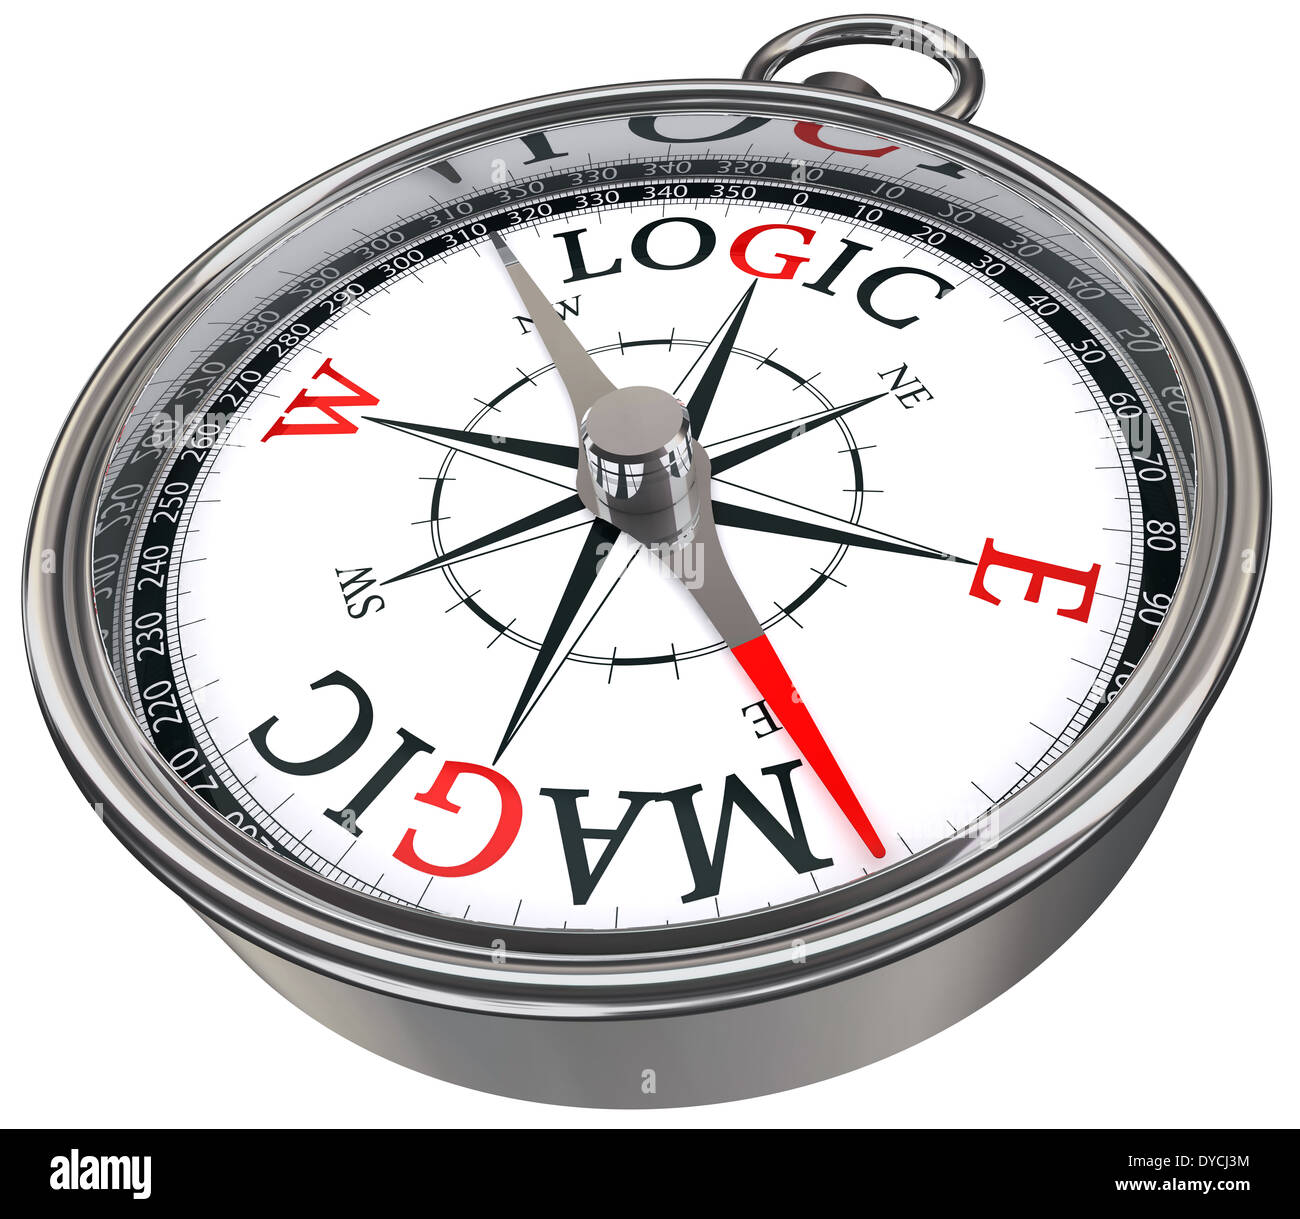 Logik im Vergleich zu Magiekonzept Kompass isoliert auf weißem Hintergrund Stockfoto